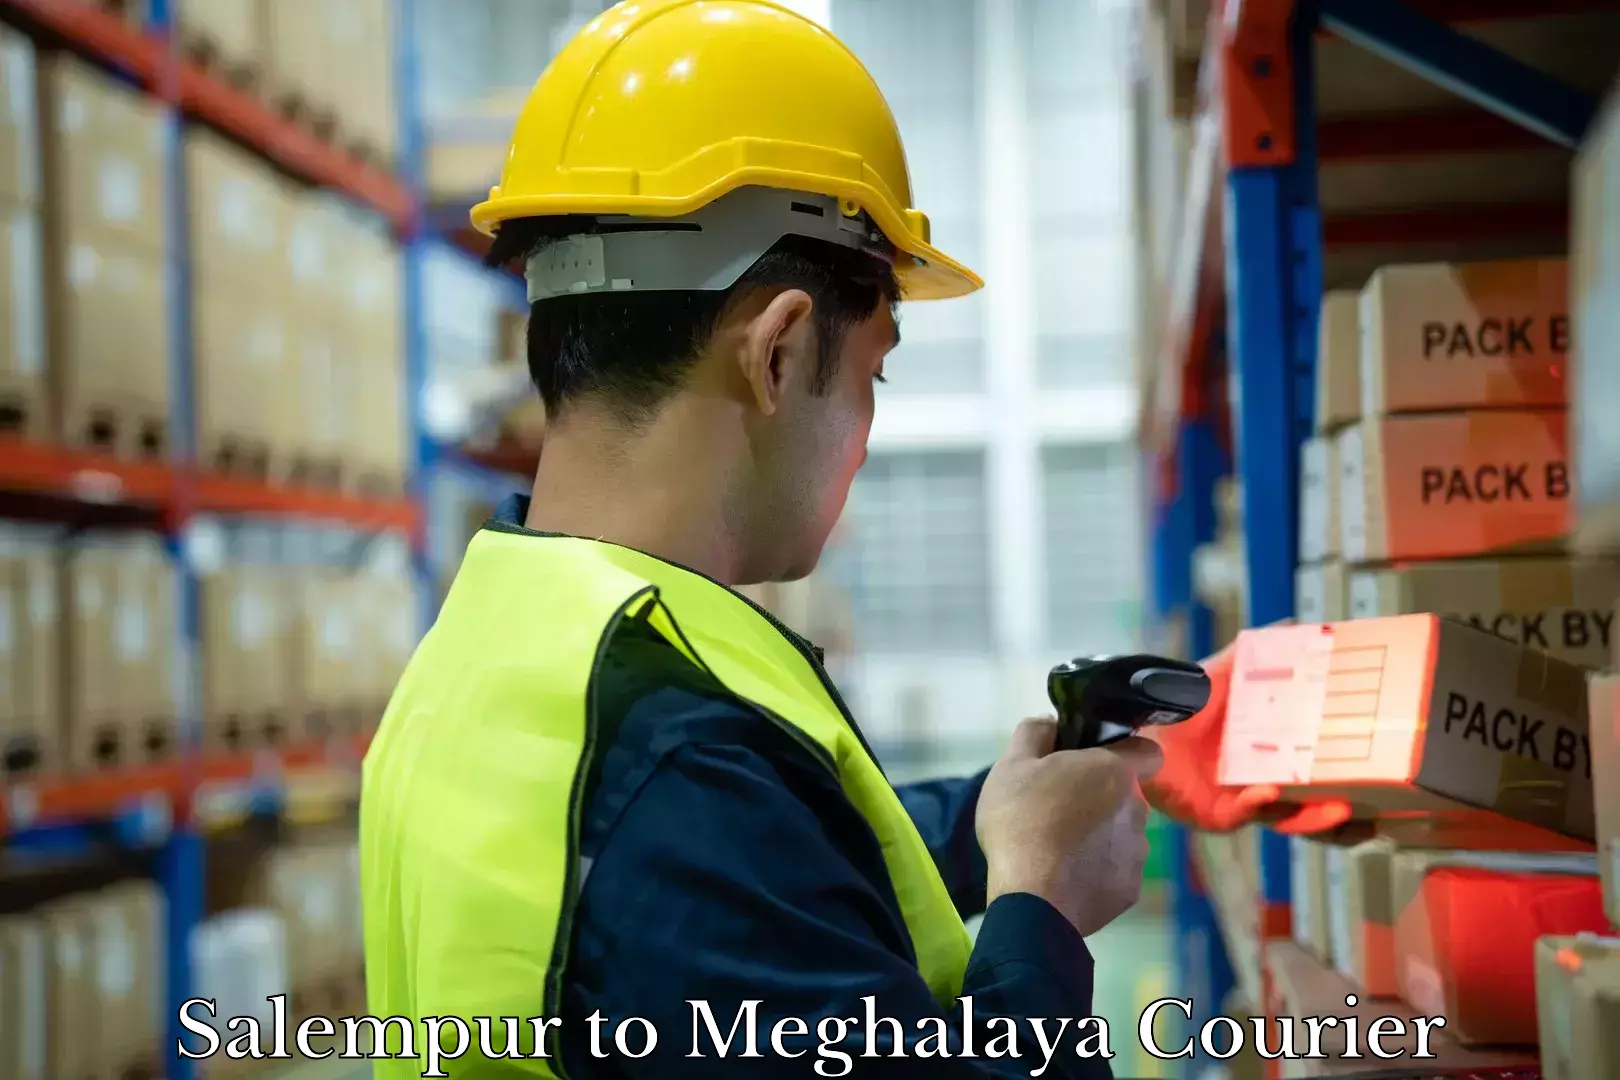 Digital baggage courier Salempur to Meghalaya